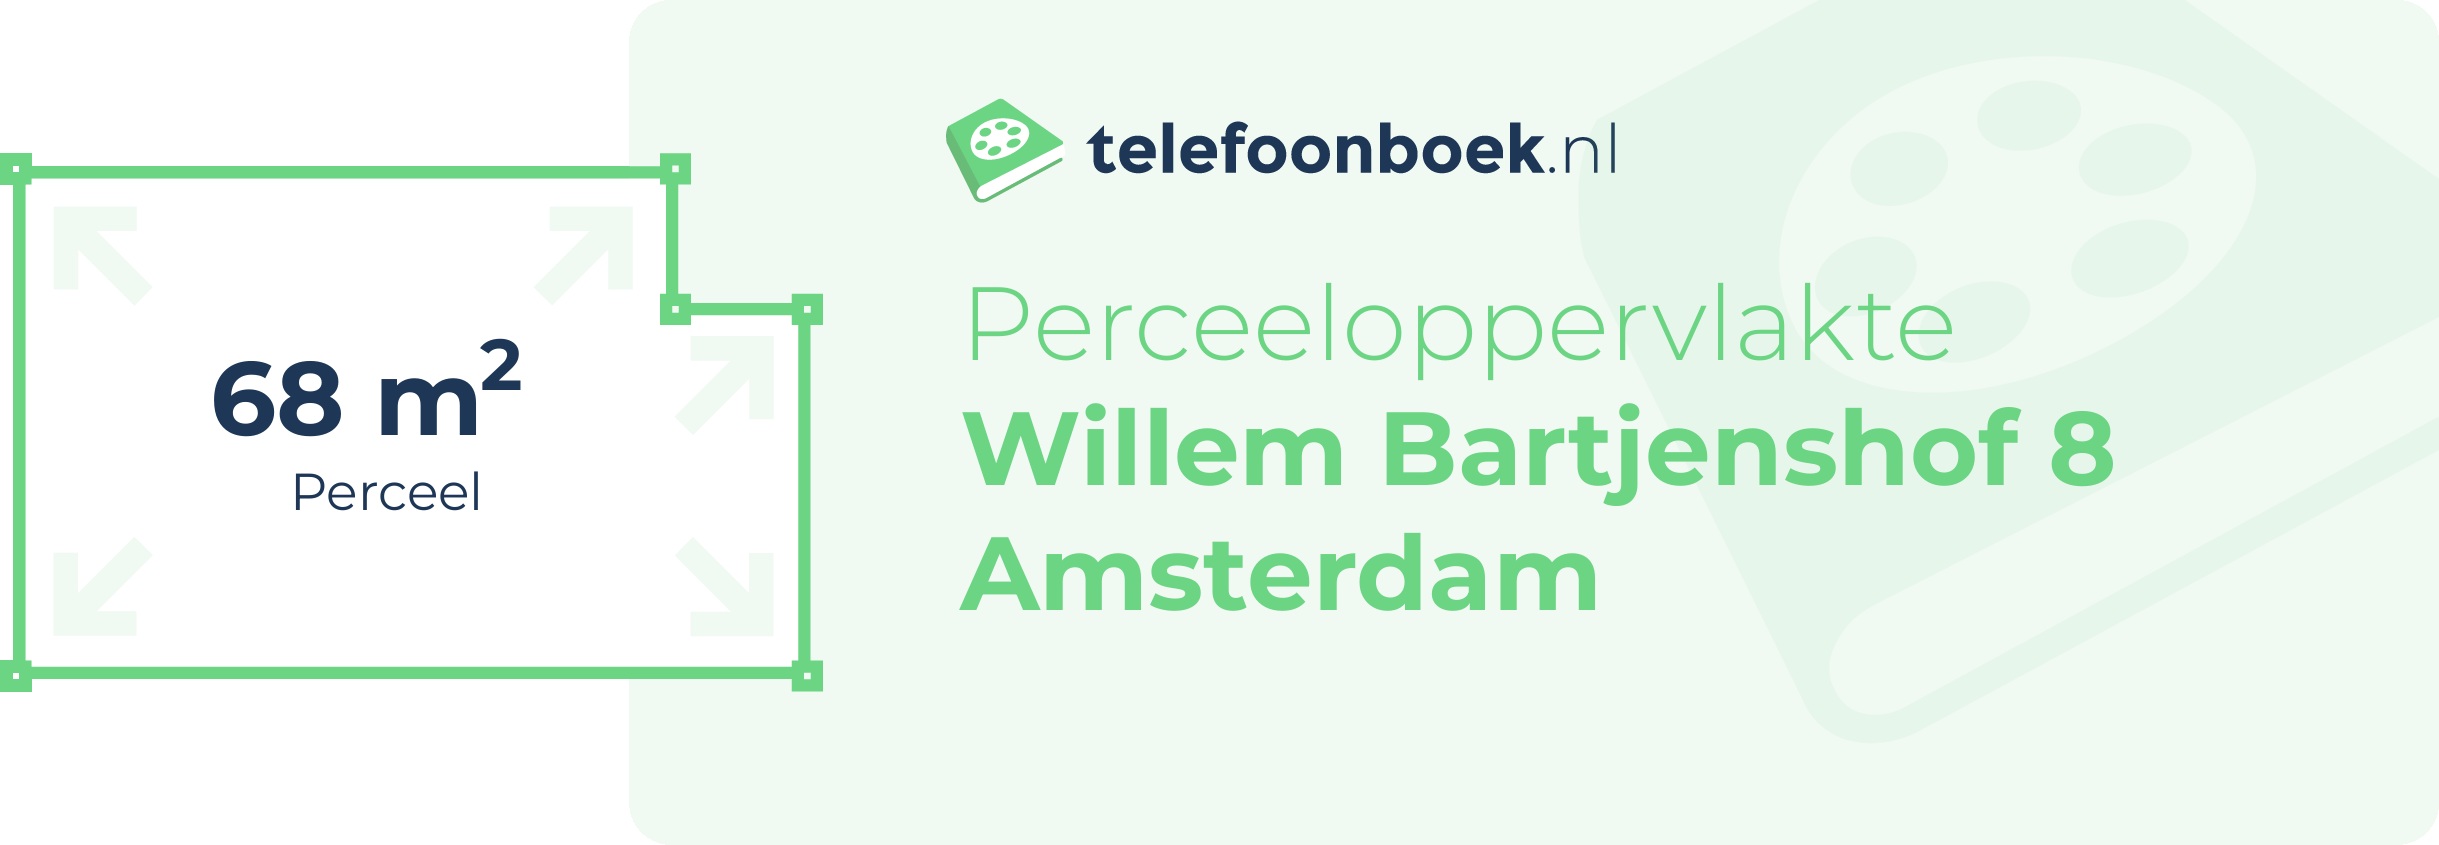 Perceeloppervlakte Willem Bartjenshof 8 Amsterdam